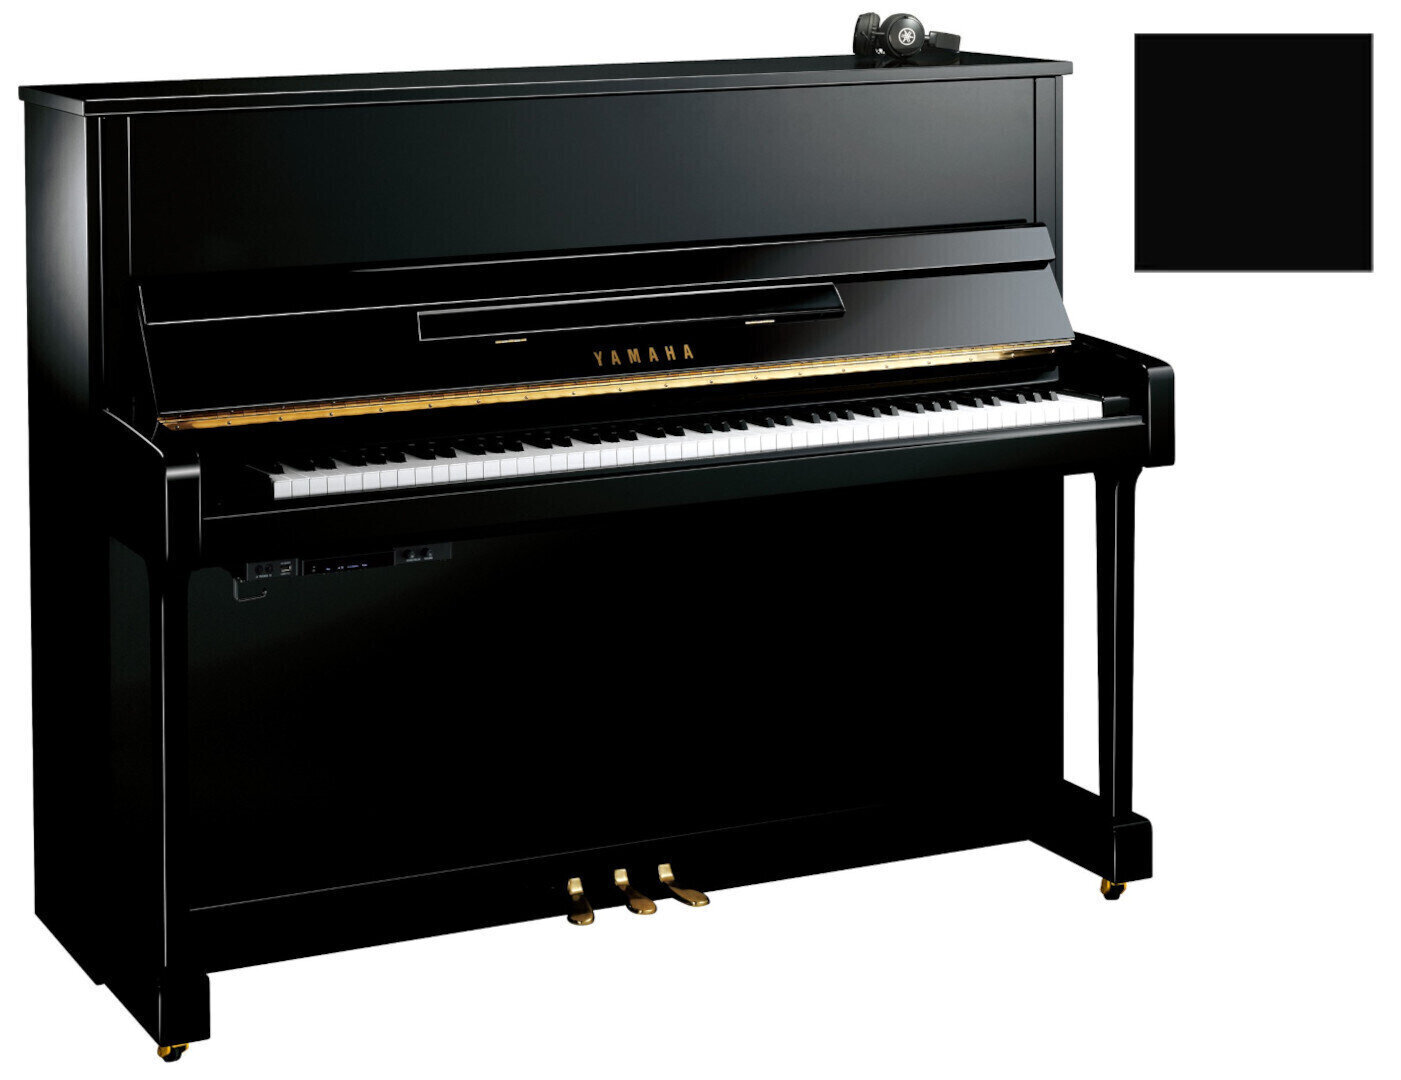 Piano Yamaha B3 SC2 Silent Piano Polished Ebony